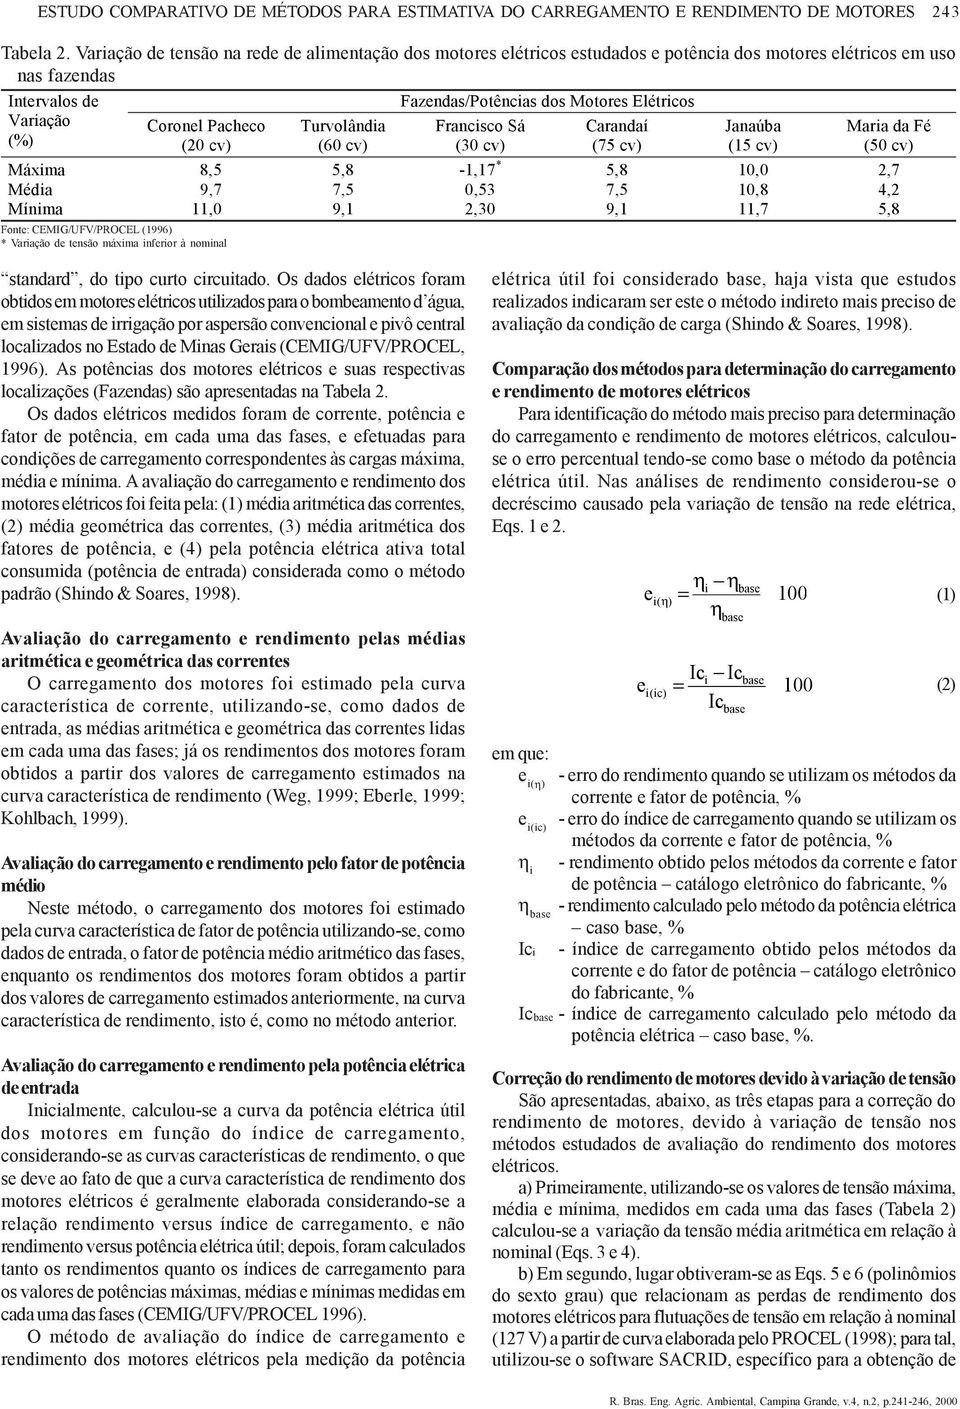 CEMIG/UFV/PROCEL (996) * Variação de tensão máxima inferior à nominal Turvolândia (60 cv) Fazendas/Potências dos Motores Elétricos Francisco Sá (0 cv) Carandaí (75 cv) Janaúba (5 cv) Maria da Fé (50